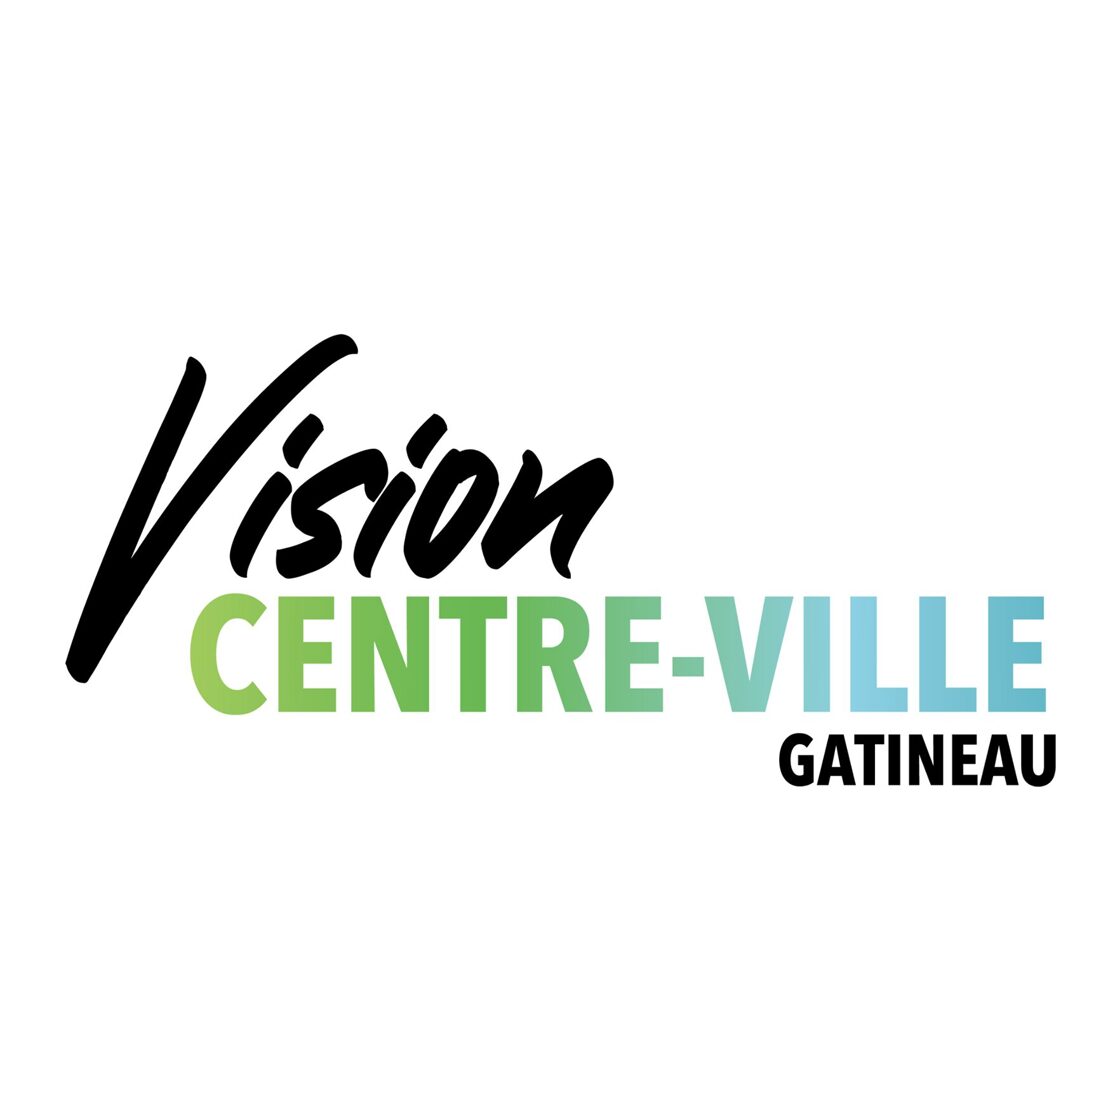 Vision Centre-ville